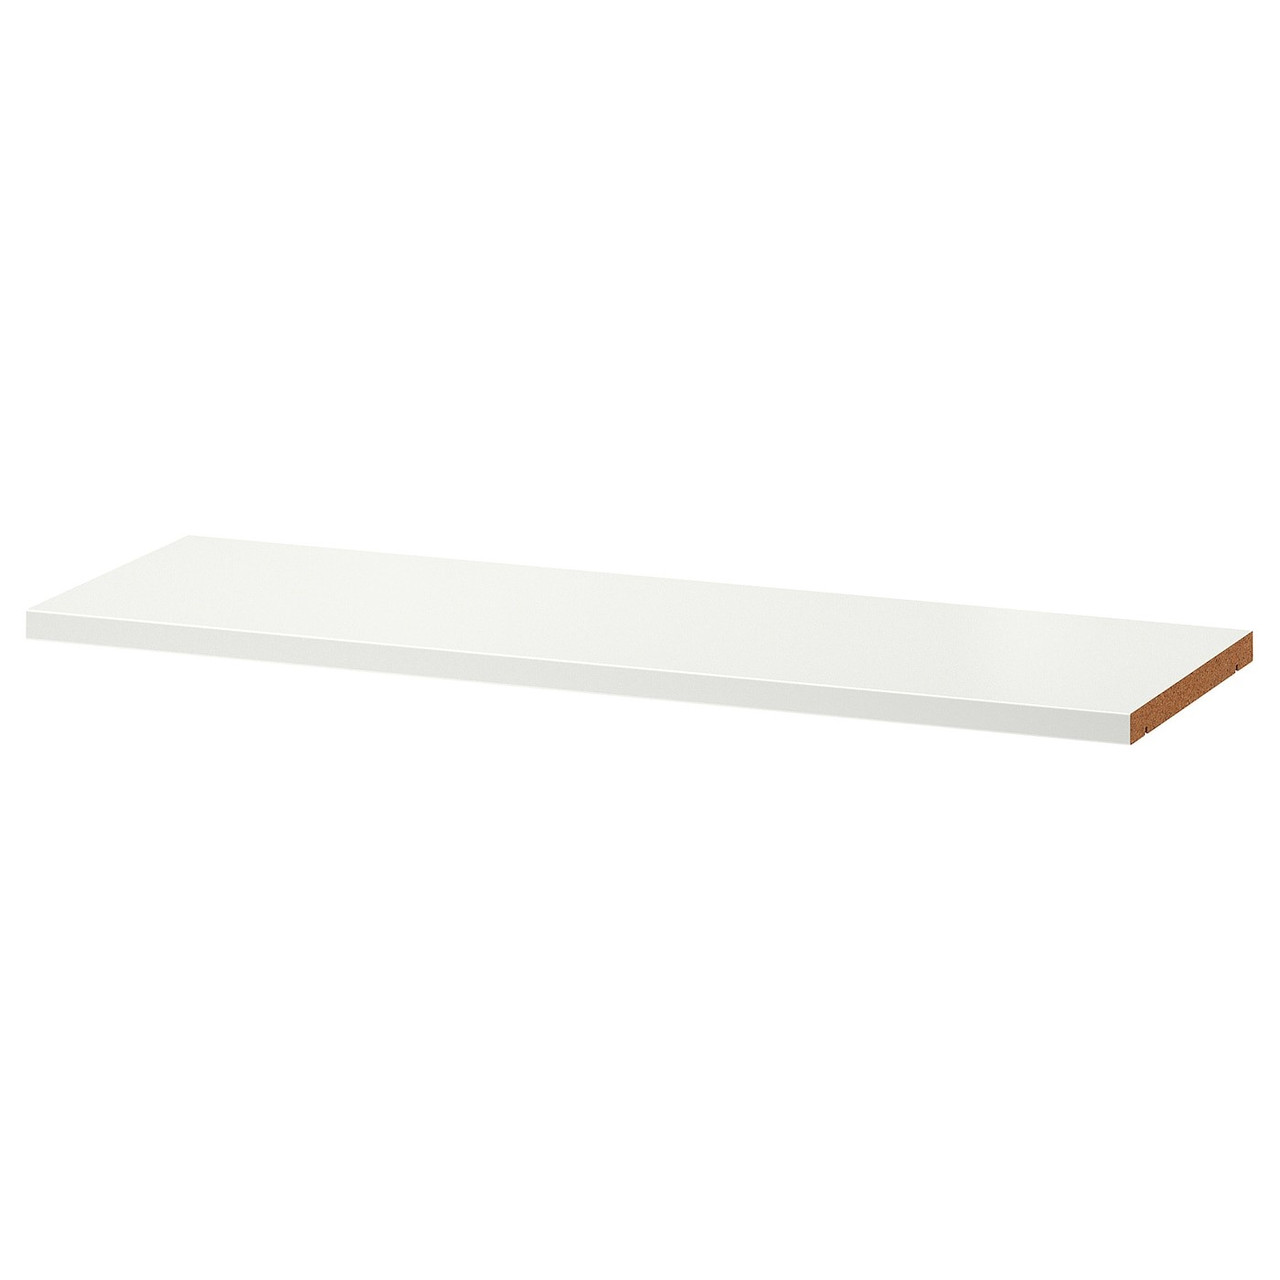 Полка дополнительная БИЛЛИ белый 76x26 см ИКЕА, IKEA